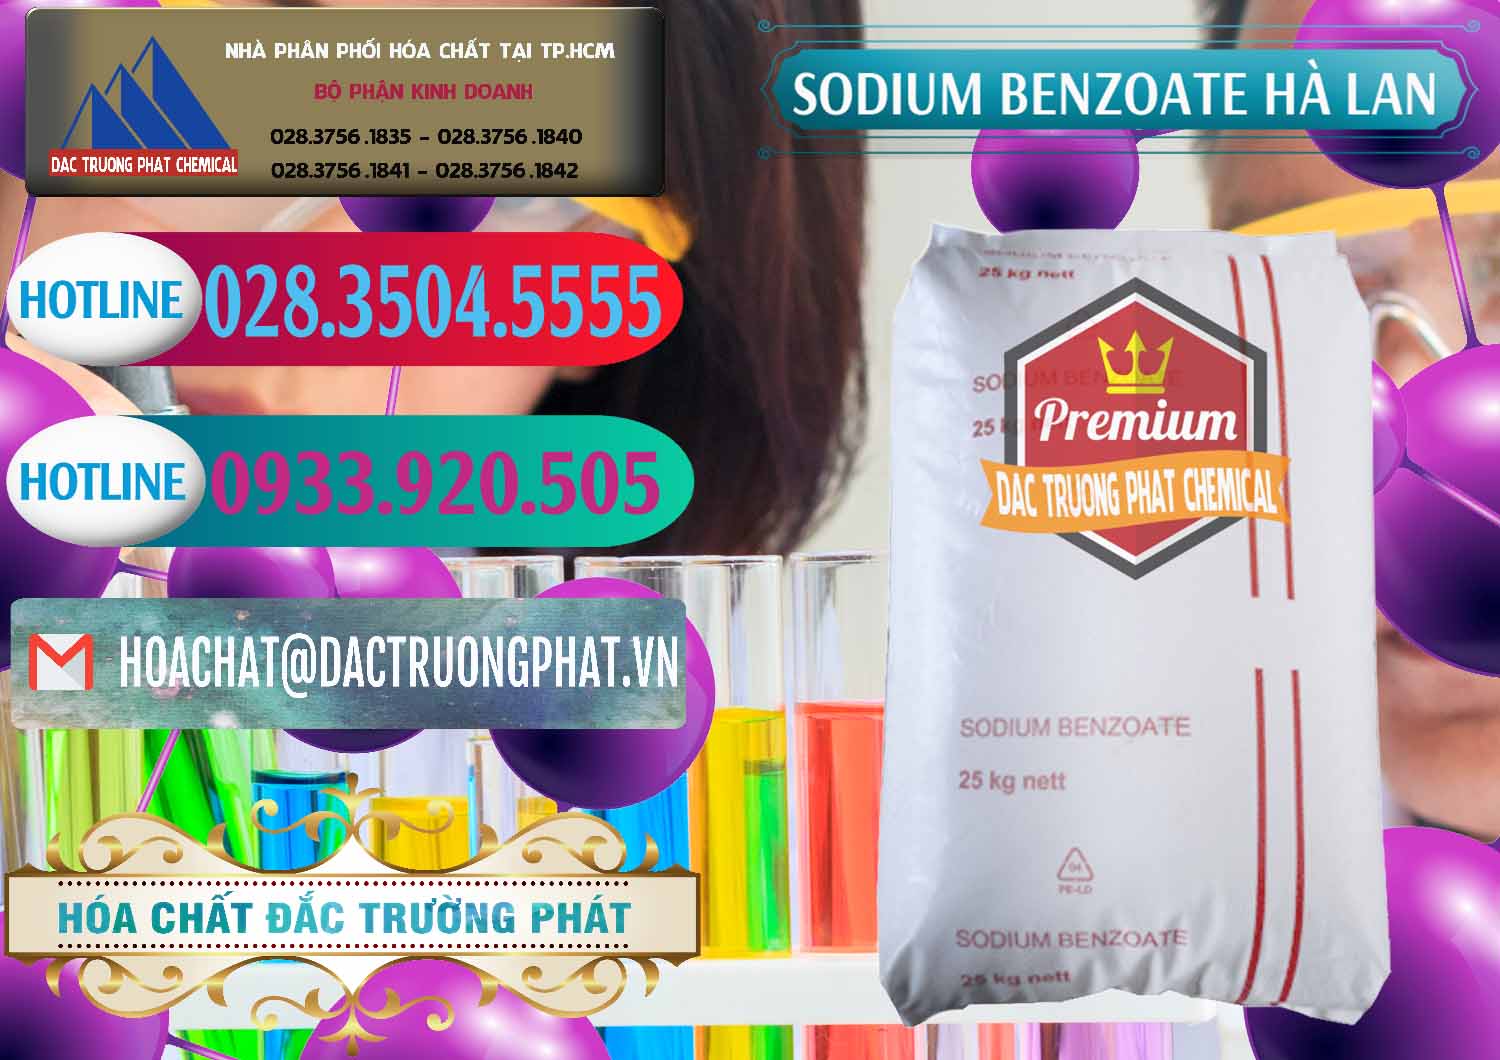 Công ty nhập khẩu & bán Sodium Benzoate - Mốc Bột Chữ Cam Hà Lan Netherlands - 0360 - Chuyên bán và cung cấp hóa chất tại TP.HCM - truongphat.vn